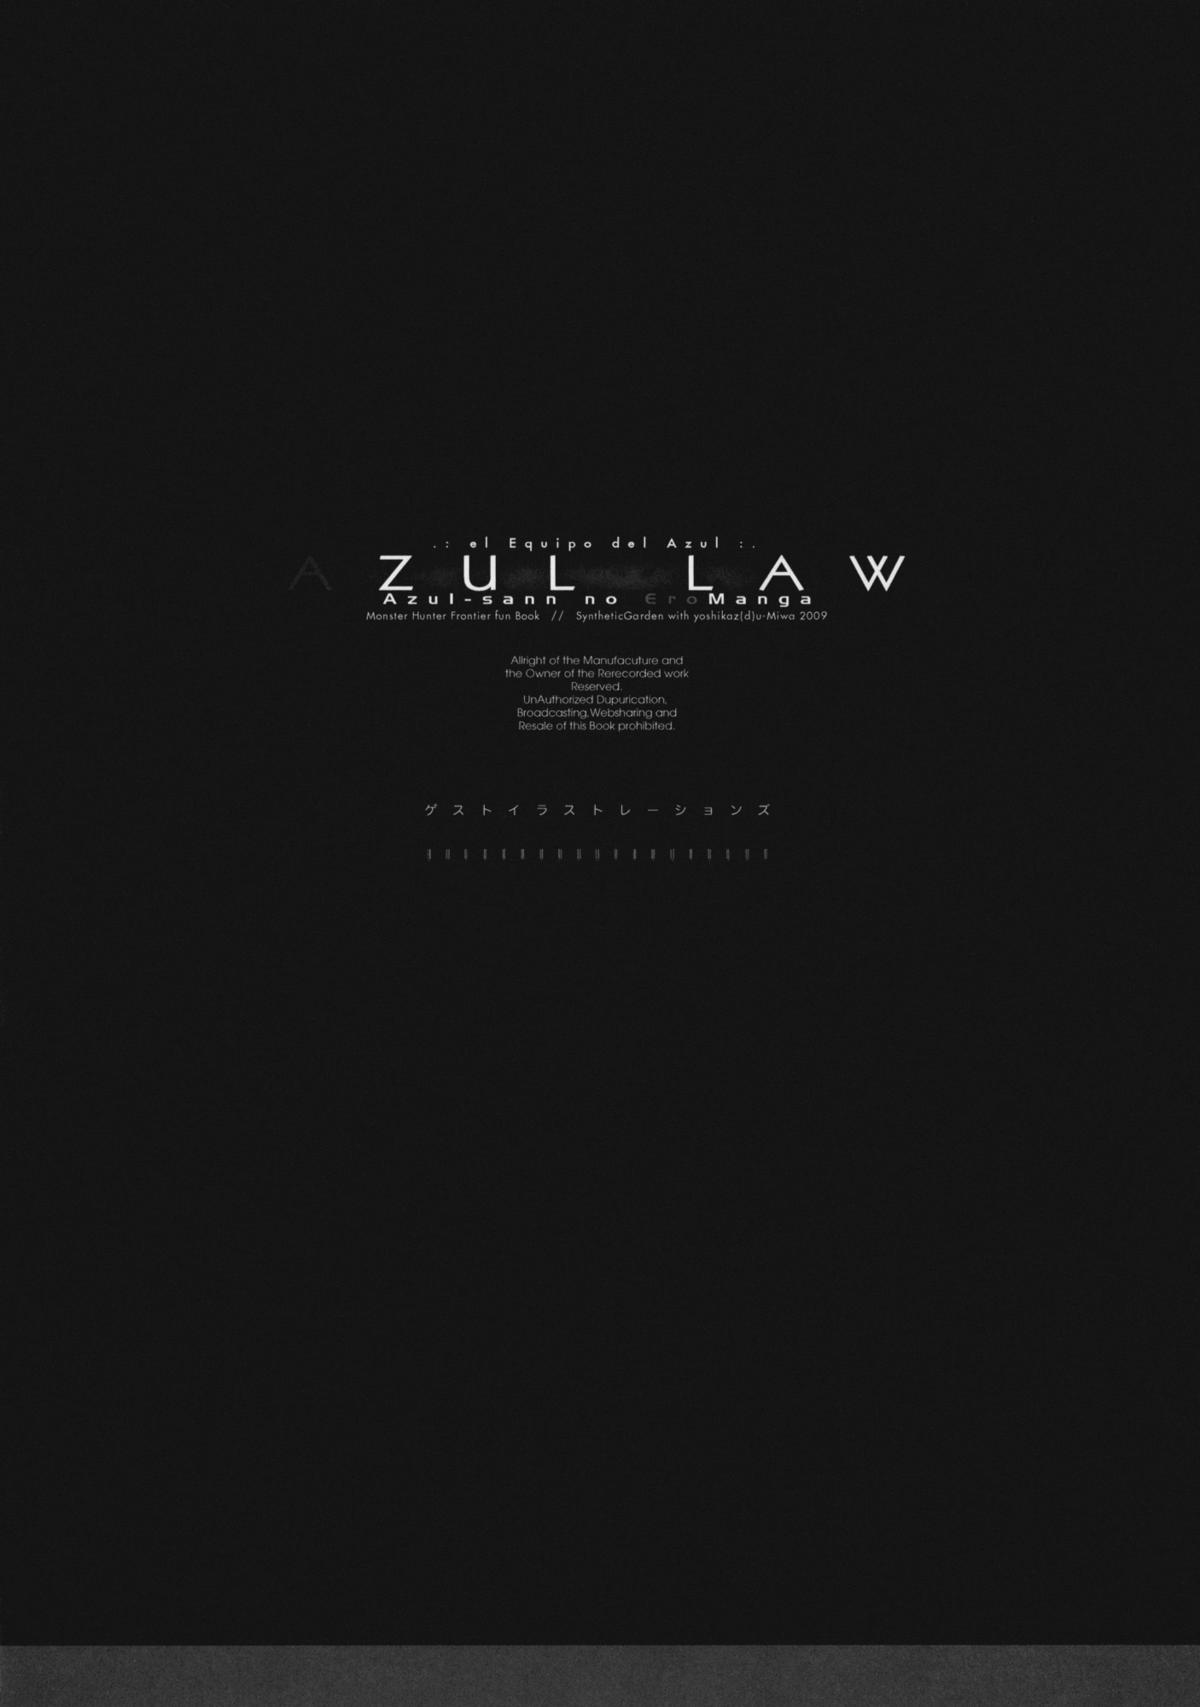 (C77) [Synthetic Garden (よろず)] AZUL LAW (モンスターハンター)